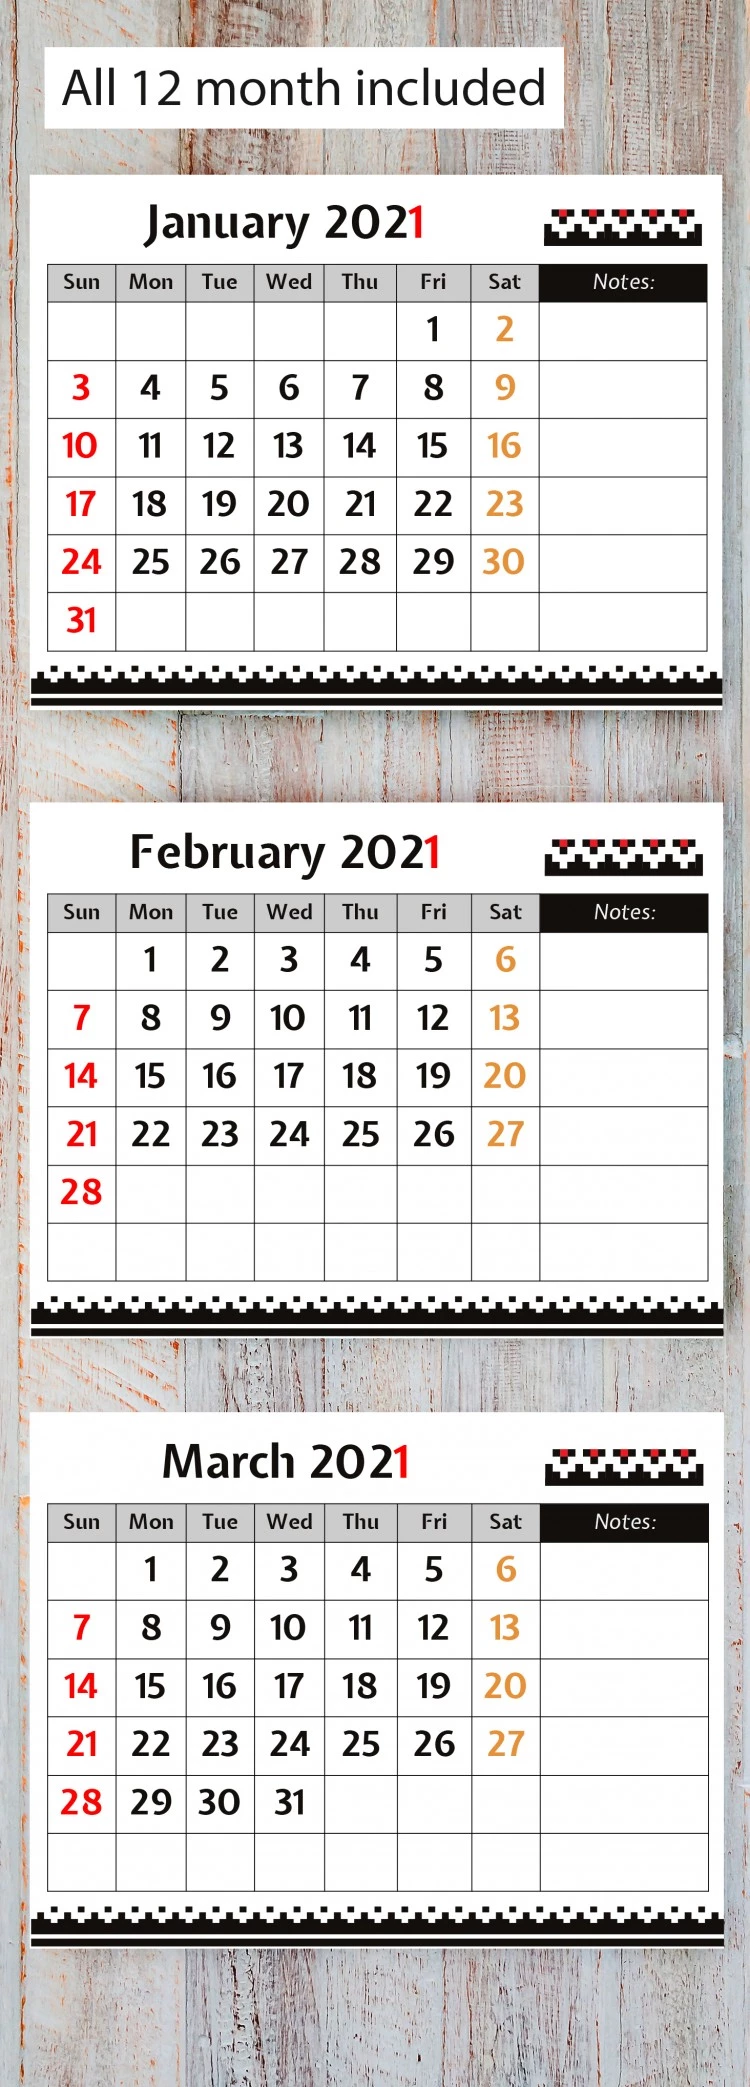 Calendário Mensal Especial 2021 - free Google Docs Template - 10061806